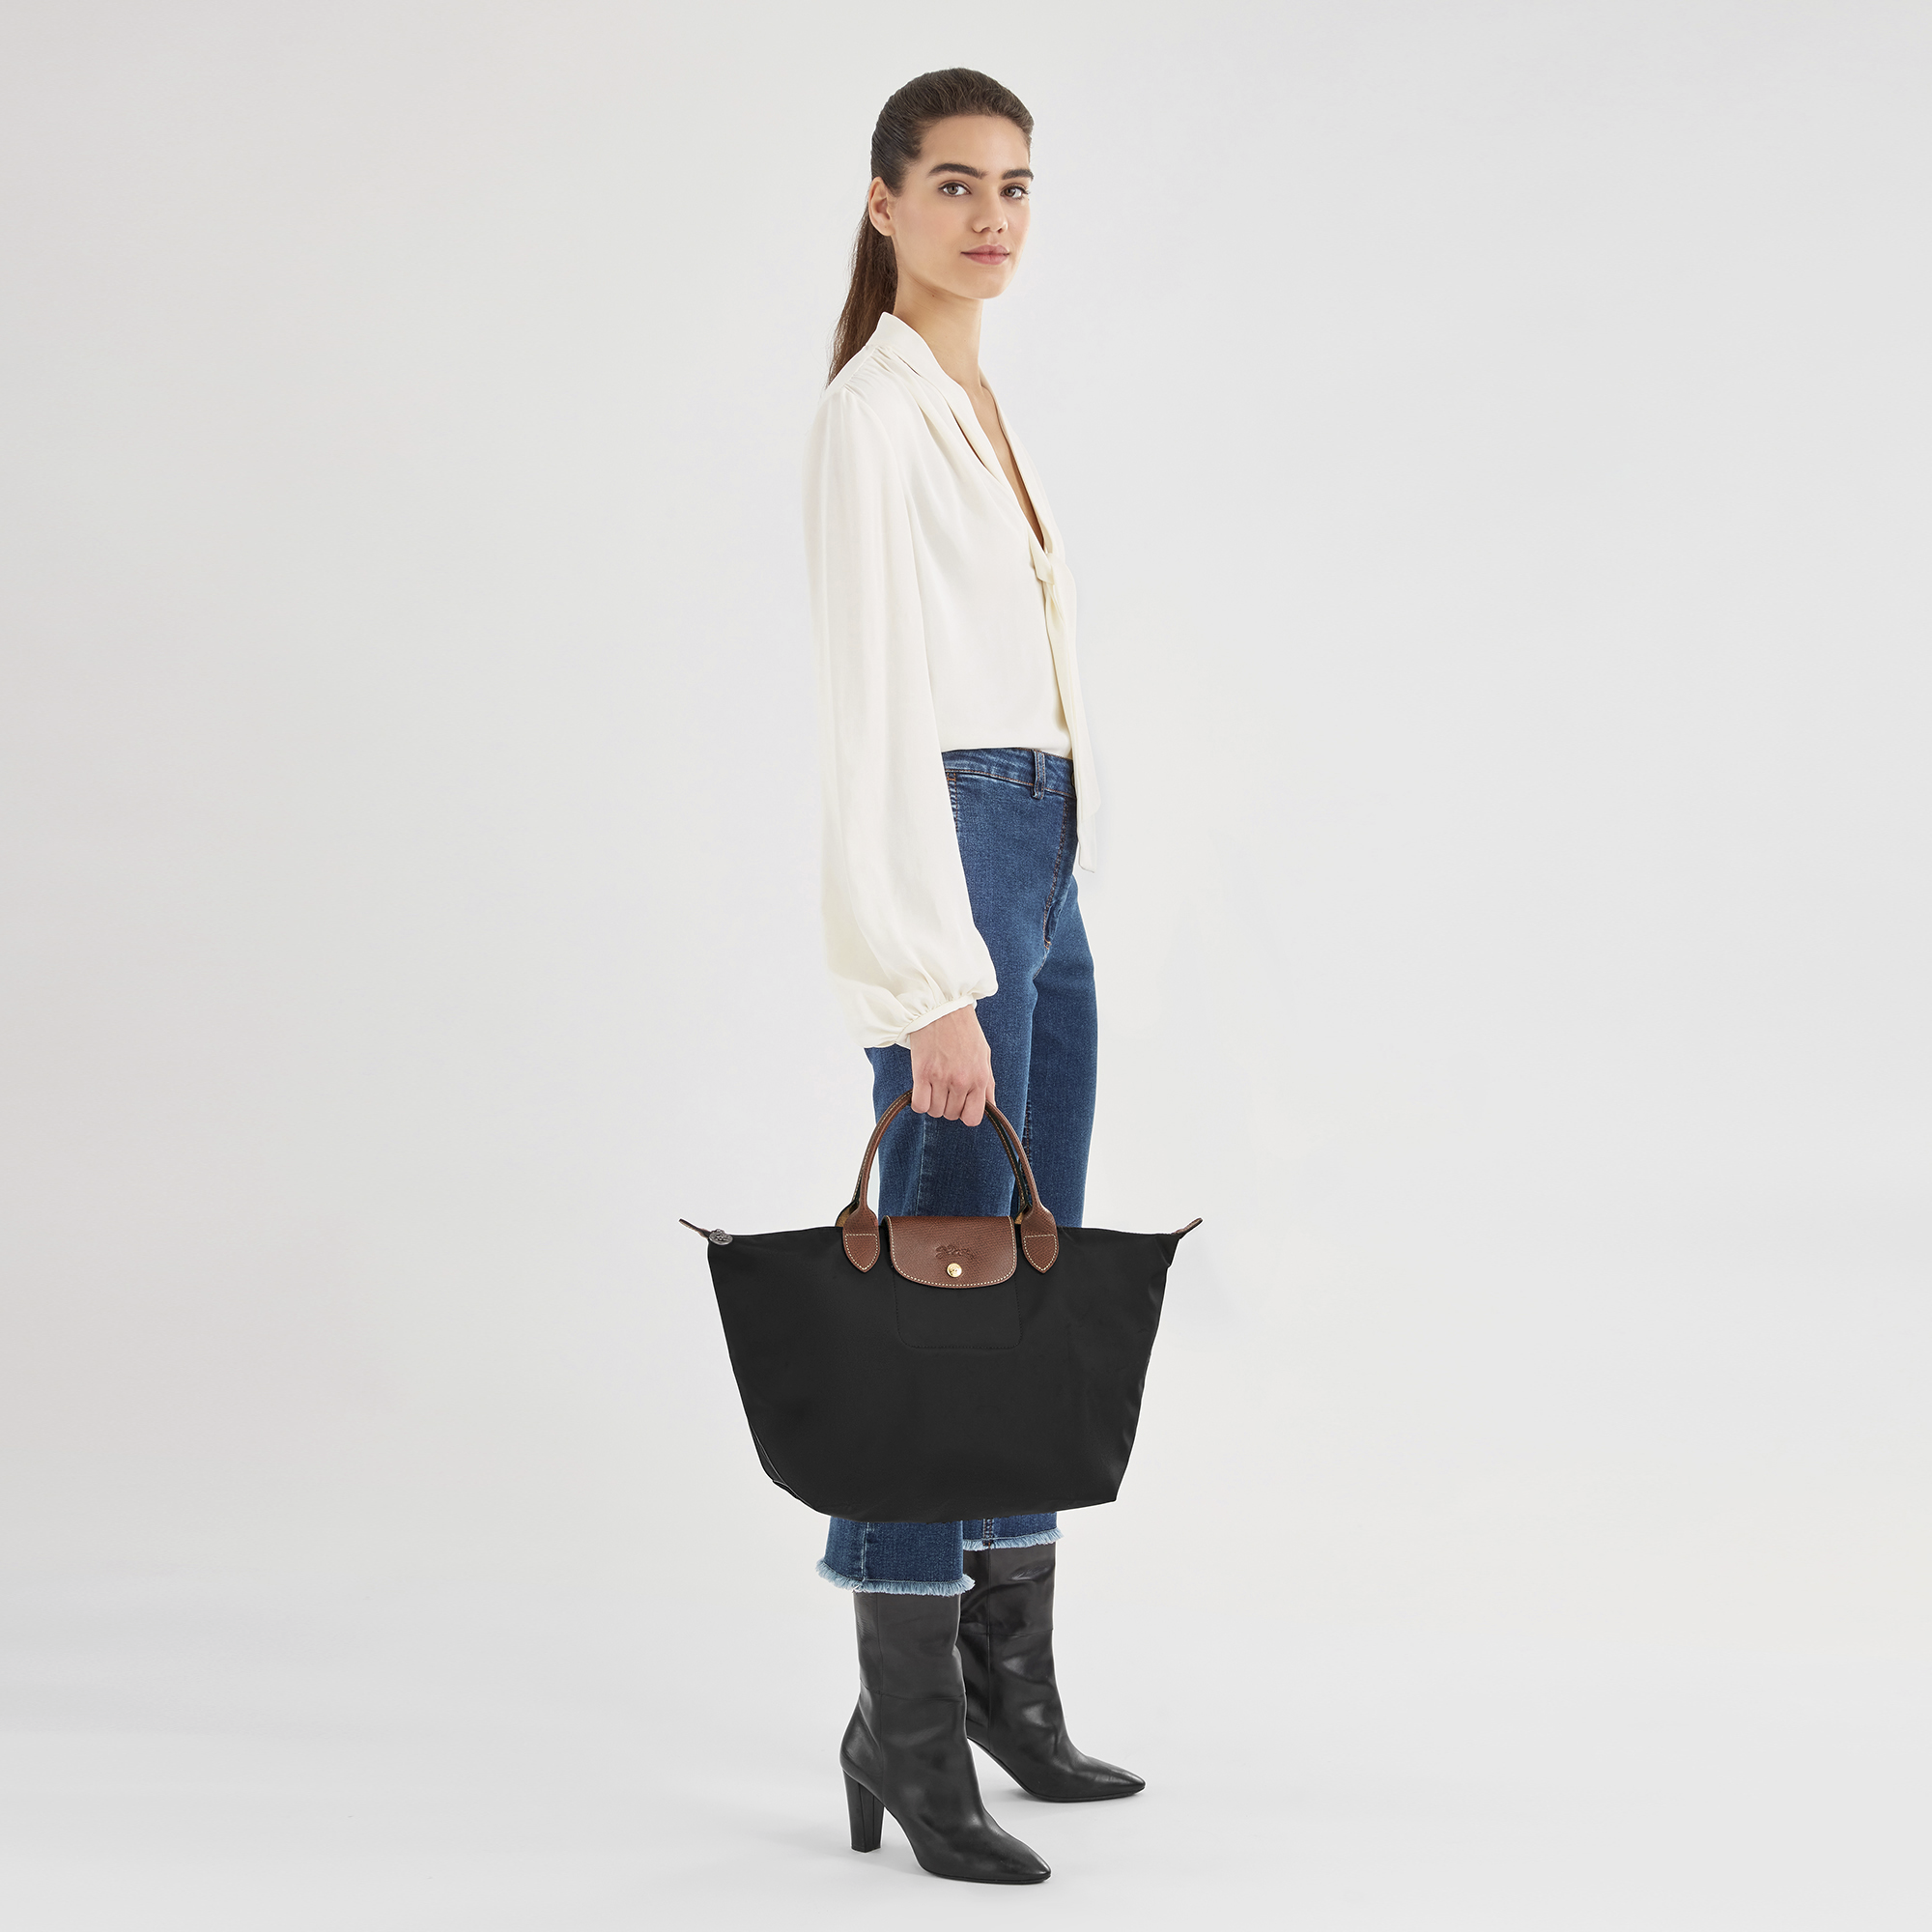 Longchamp Madeleine Black Leather Top Handle Satchel Shoulder Bag